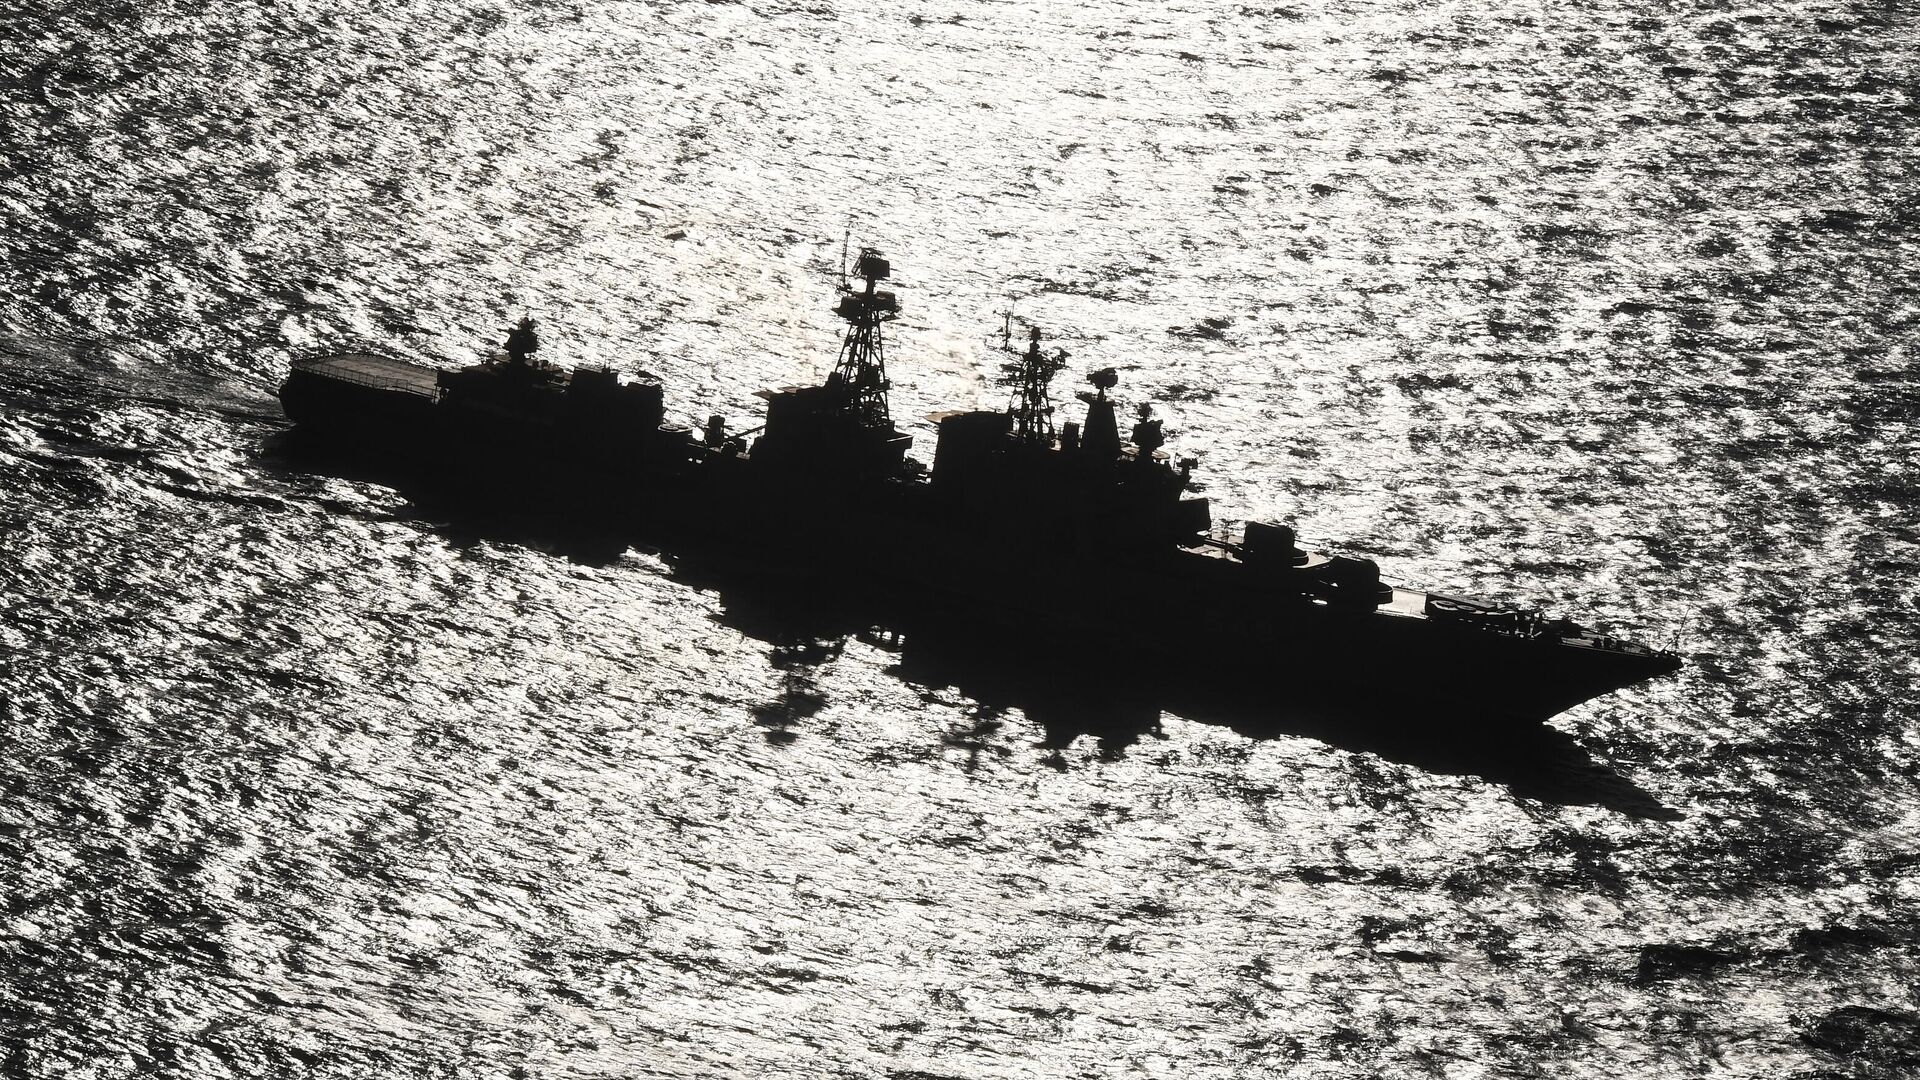 Большой противолодочный корабль Адмирал Пантелеев ВМФ РФ во время маневрирования на учениях Морское взаимодействие-2021 - РИА Новости, 1920, 21.10.2021